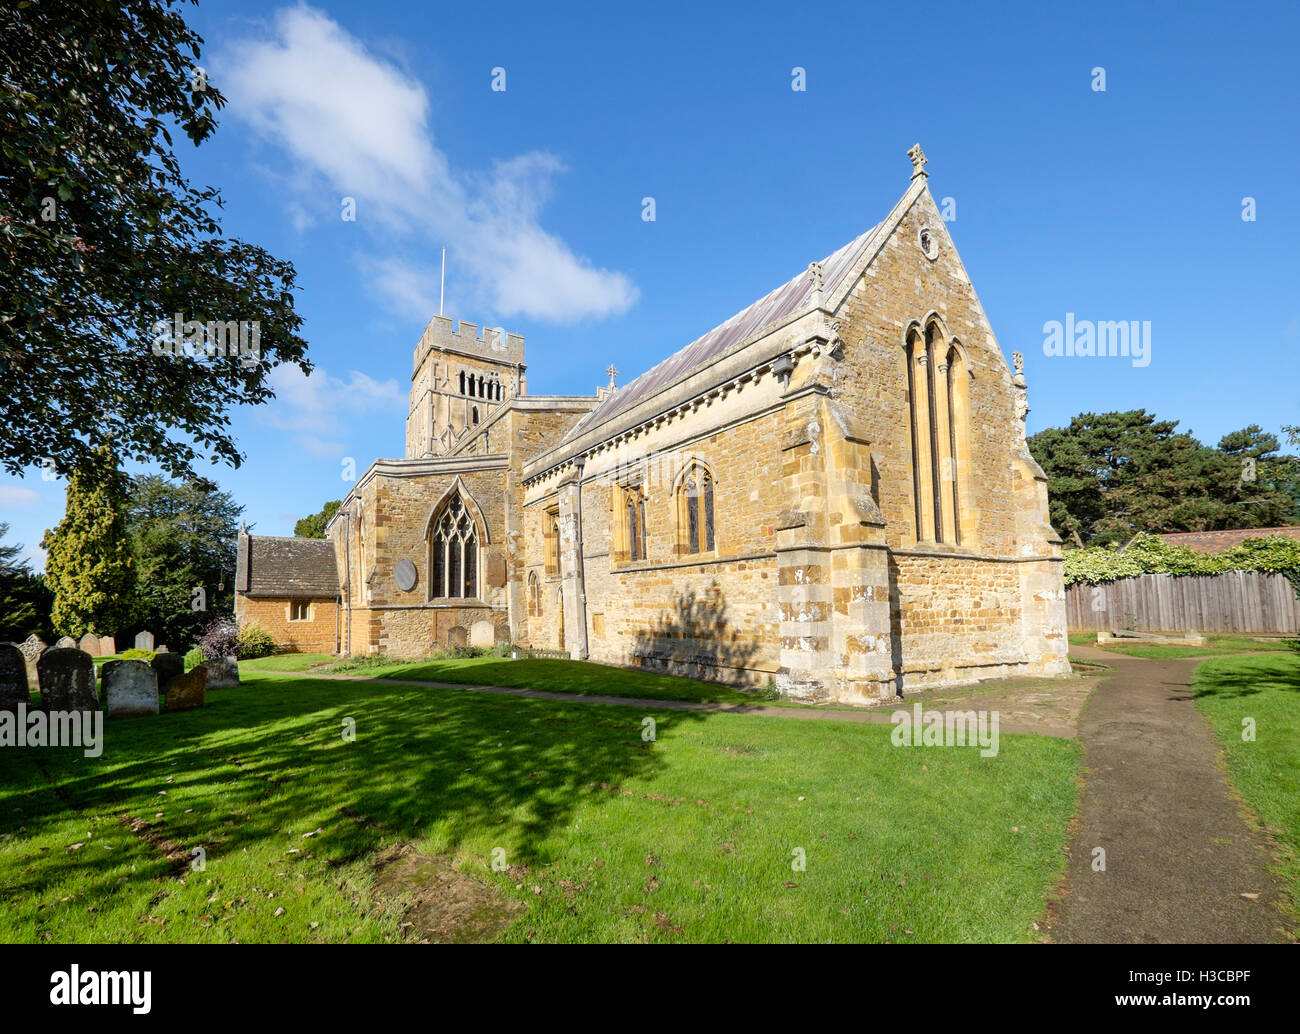 The Anglo-Saxon All Saints' Church, Earls Barton, Northamptonshire, England, UK. Stock Photo